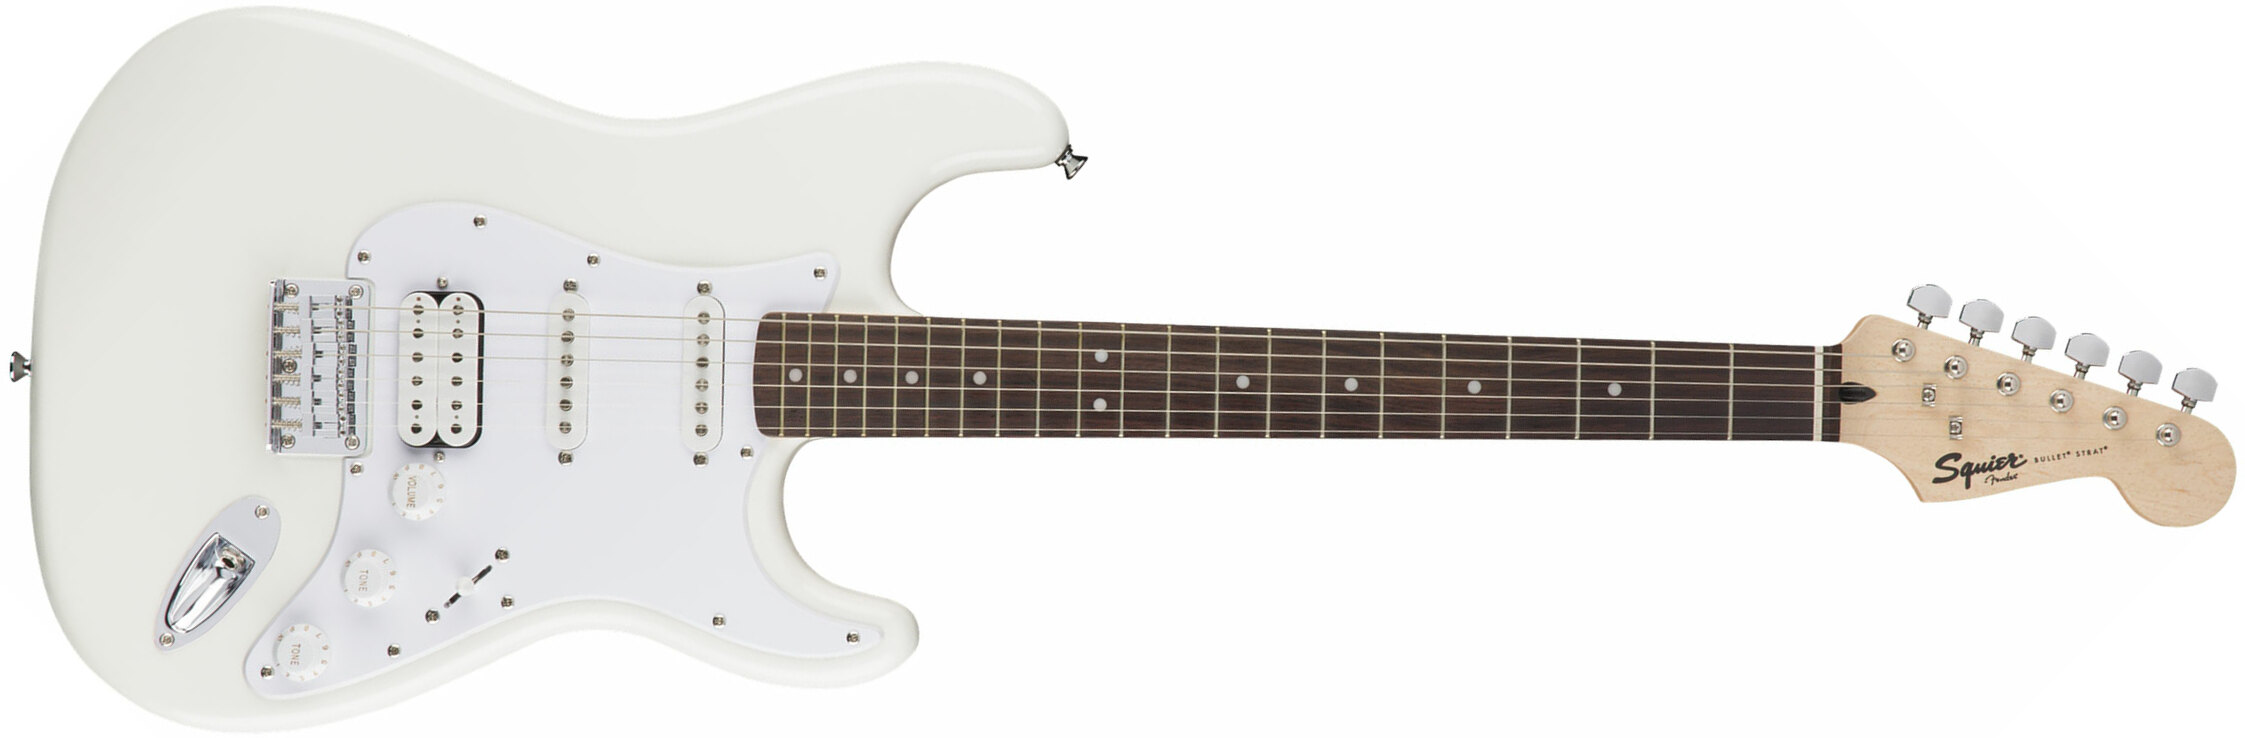 Squier Bullet Stratocaster Ht Hss (lau) - Arctic White - Str shape electric guitar - Main picture